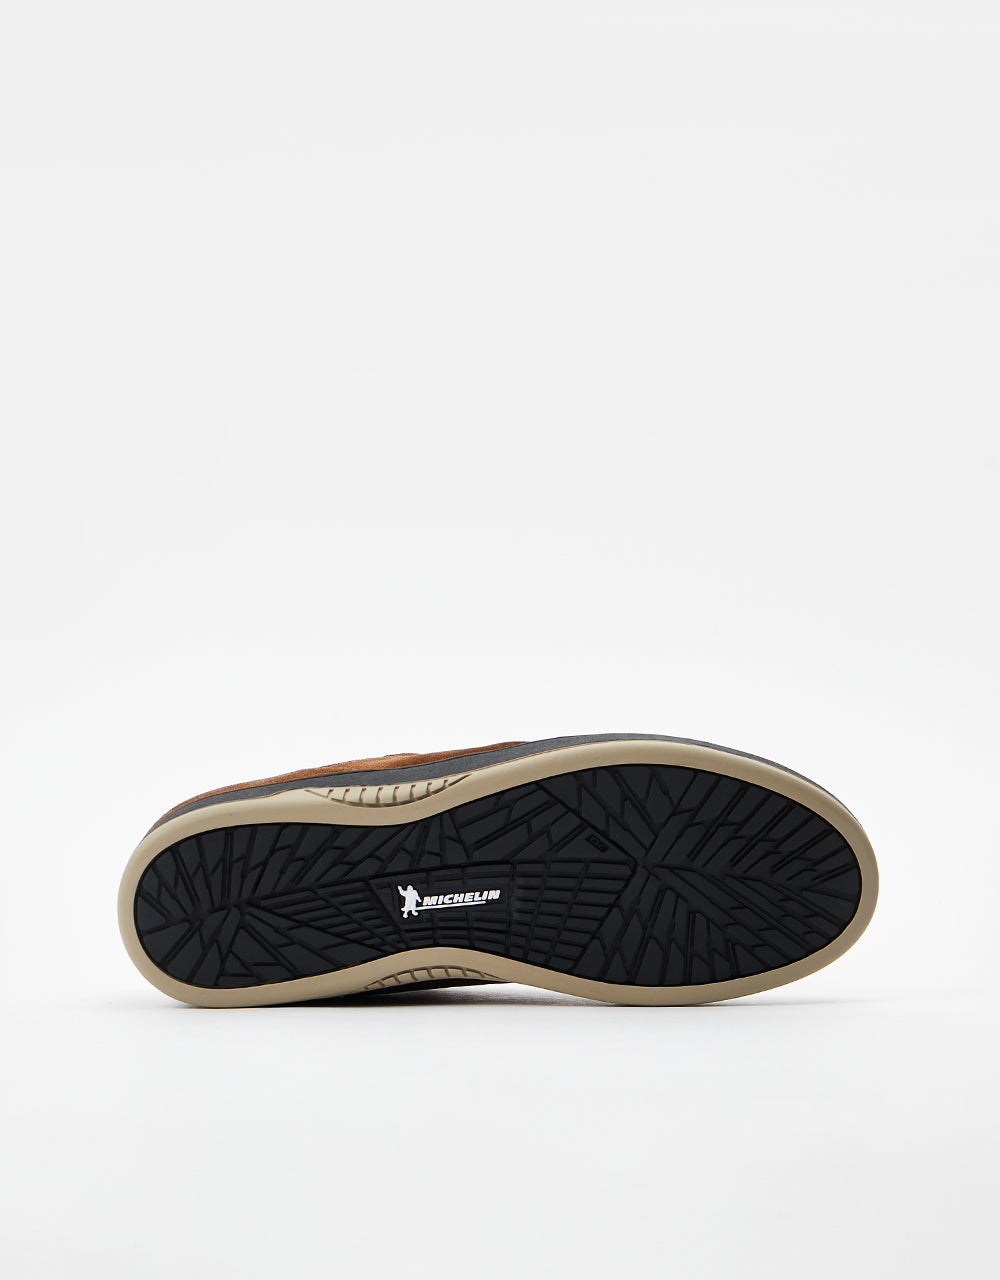 Etnies x Michelin Marana Skate Shoes - Brown/Black/Tan